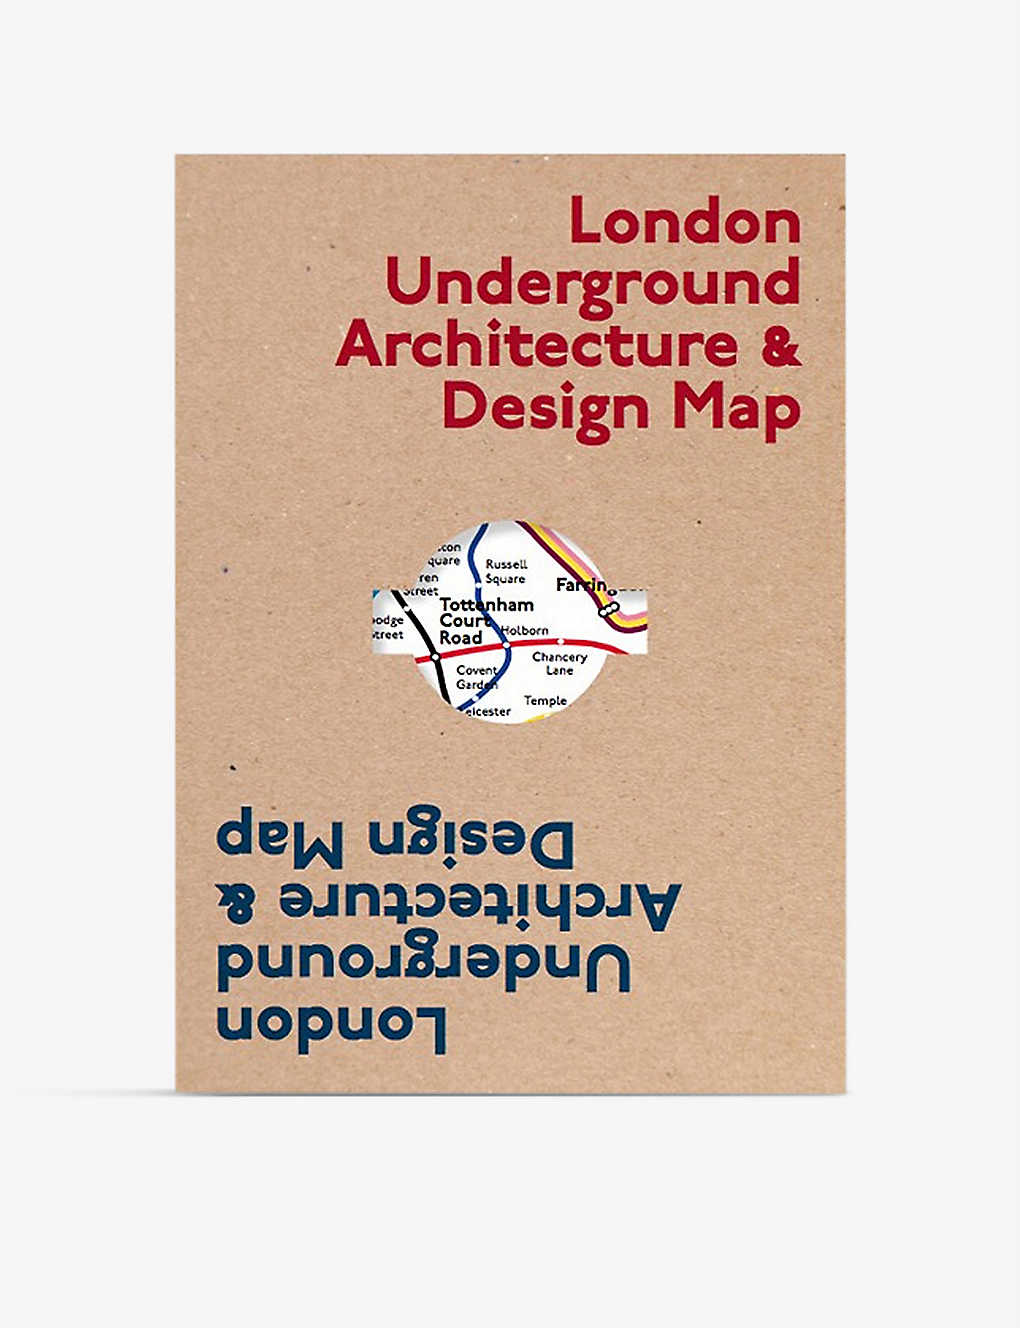 セール品 BLUE CROW MAPS ロンドン アンダーグラウンド アーキテクチャ デザイン Architecture 【SALE／65%OFF】 マップ Design map Underground London